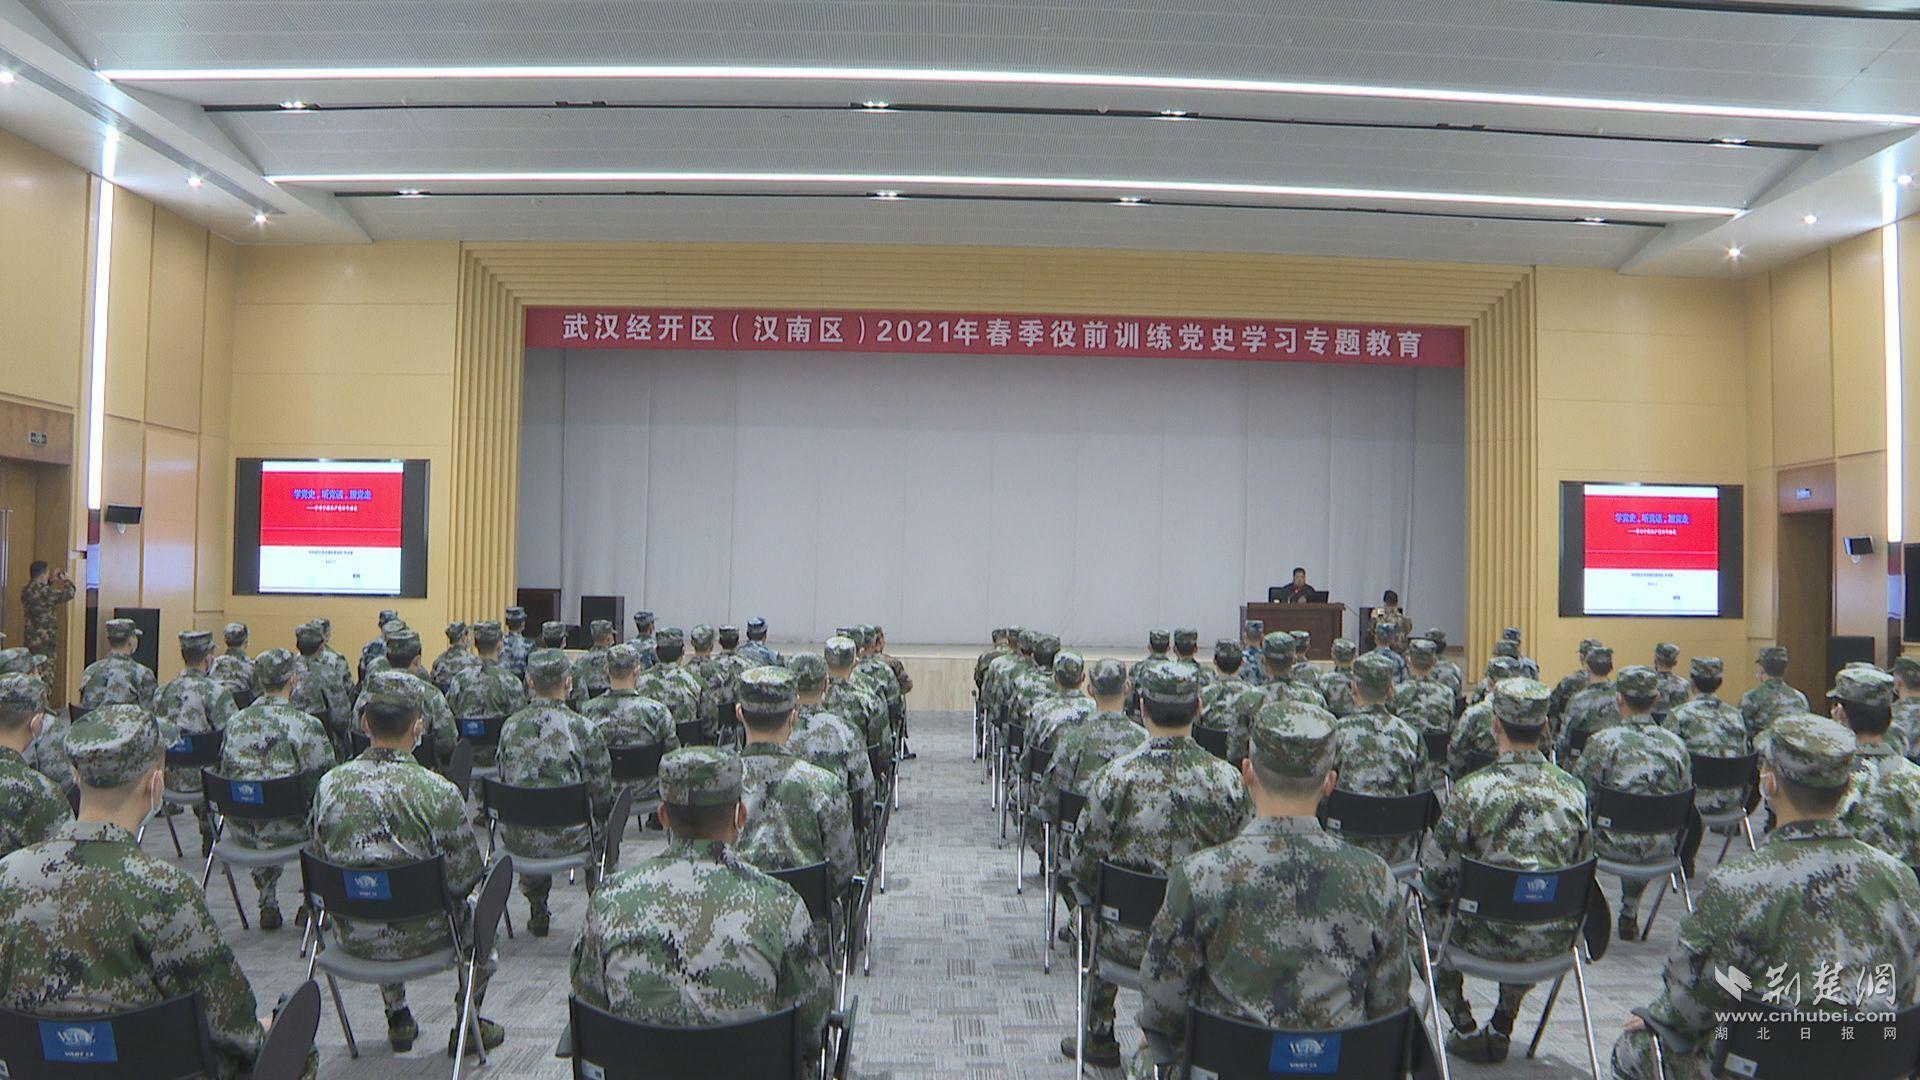 汉南区75名预定新兵役前集中学党史 奔赴军营担使命